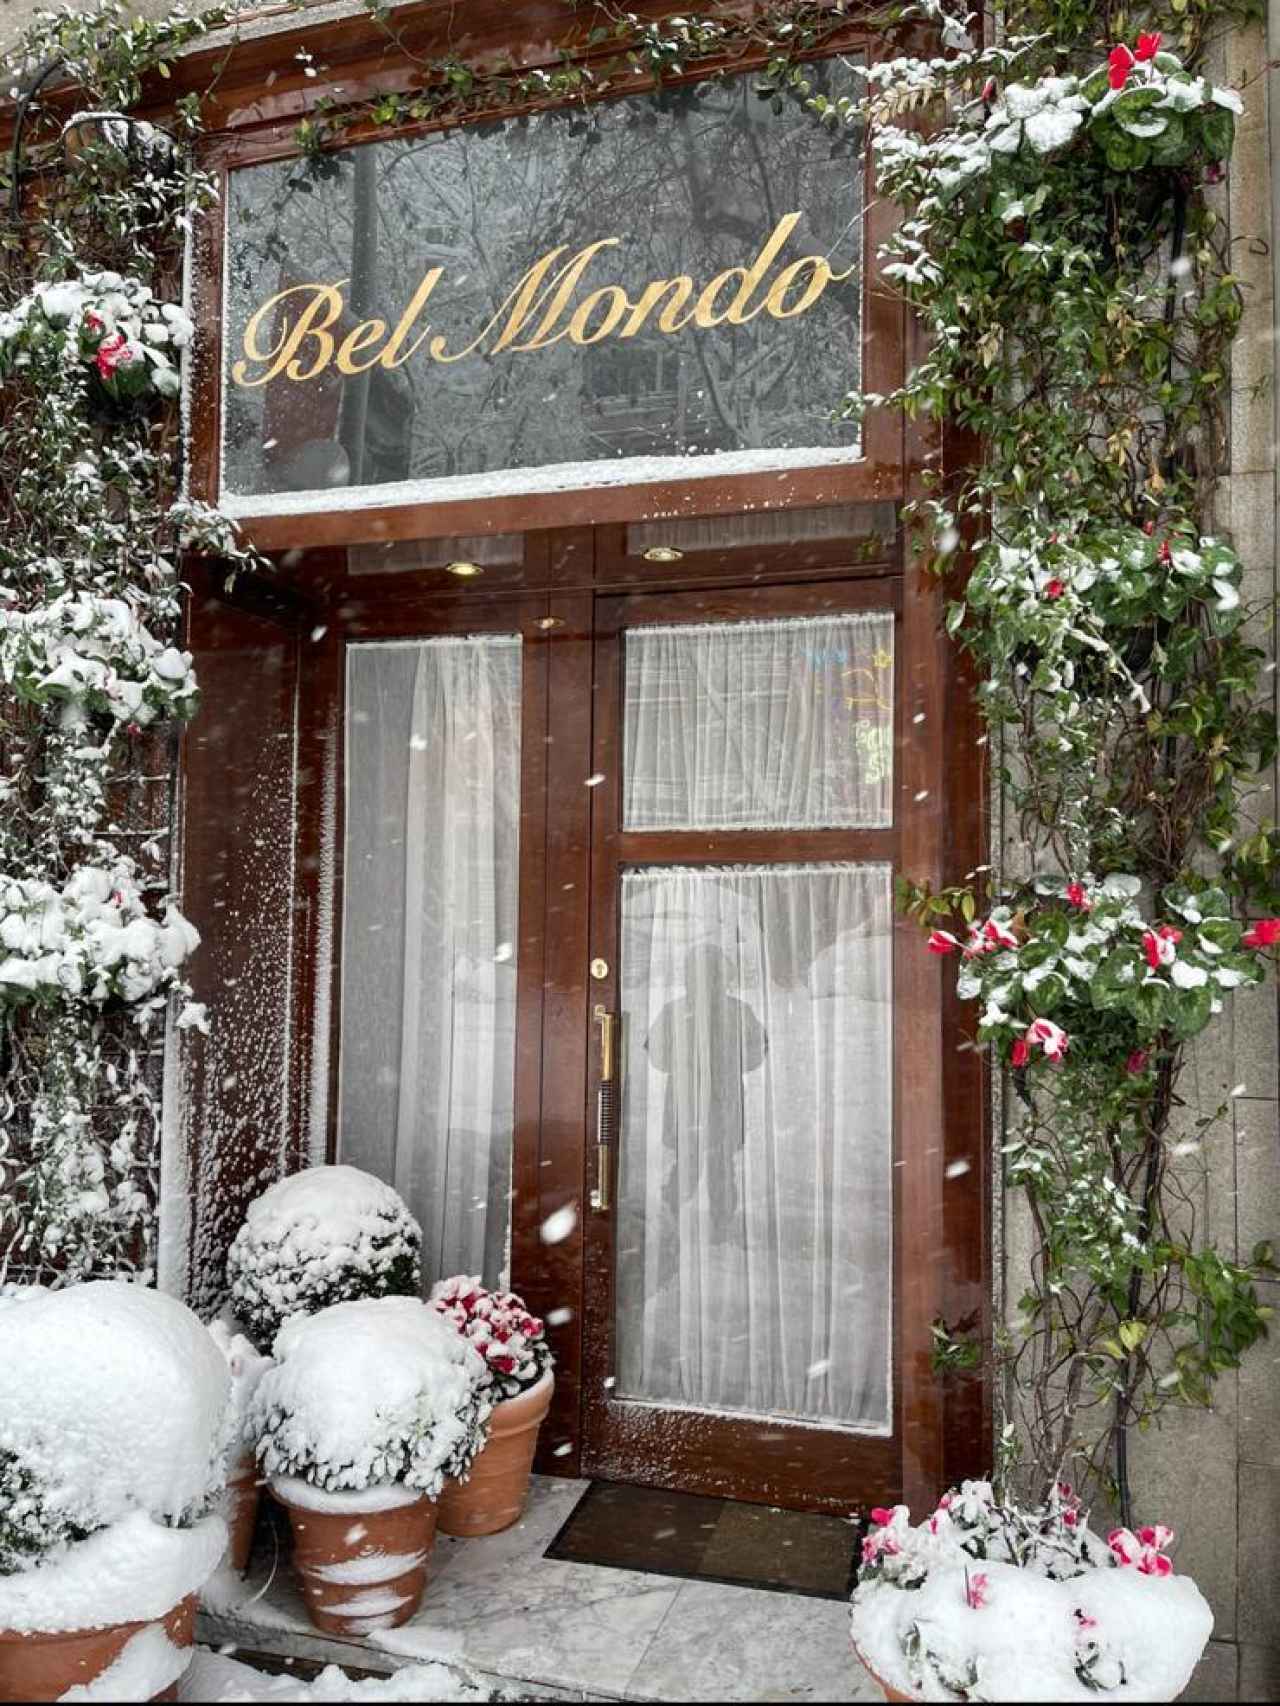 No es decoración navideña, es el Bel Mondo tras el nevazo.